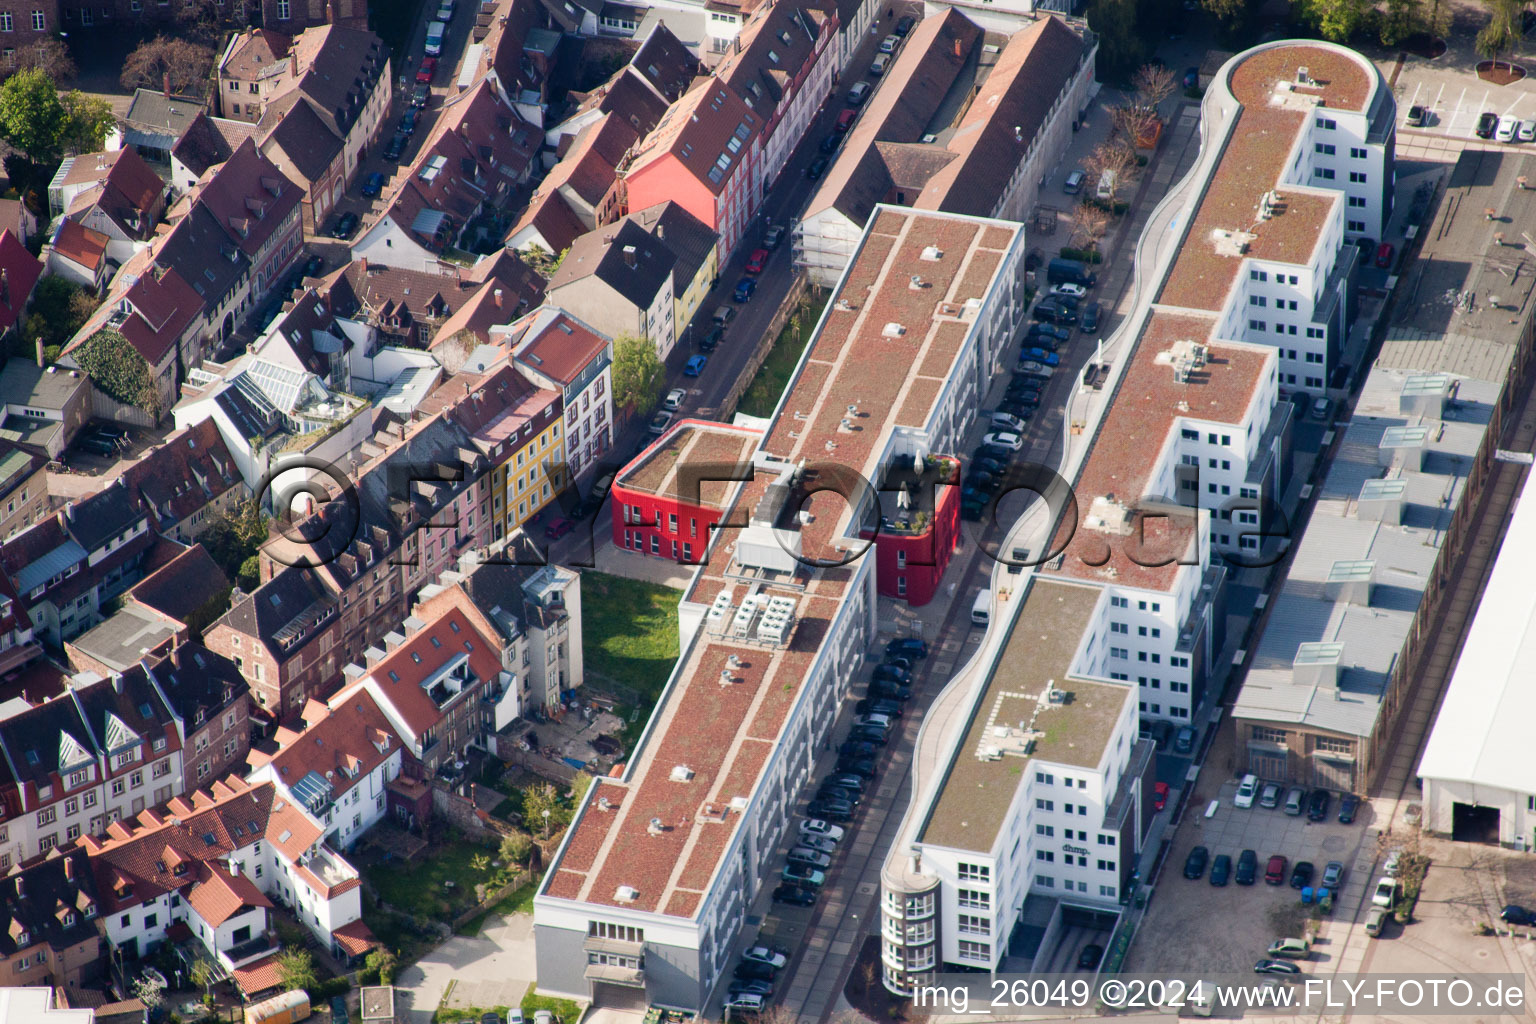 Vue aérienne de Zone d'aménagement de la zone de conversion industrielle en fonderie à le quartier Durlach in Karlsruhe dans le département Bade-Wurtemberg, Allemagne